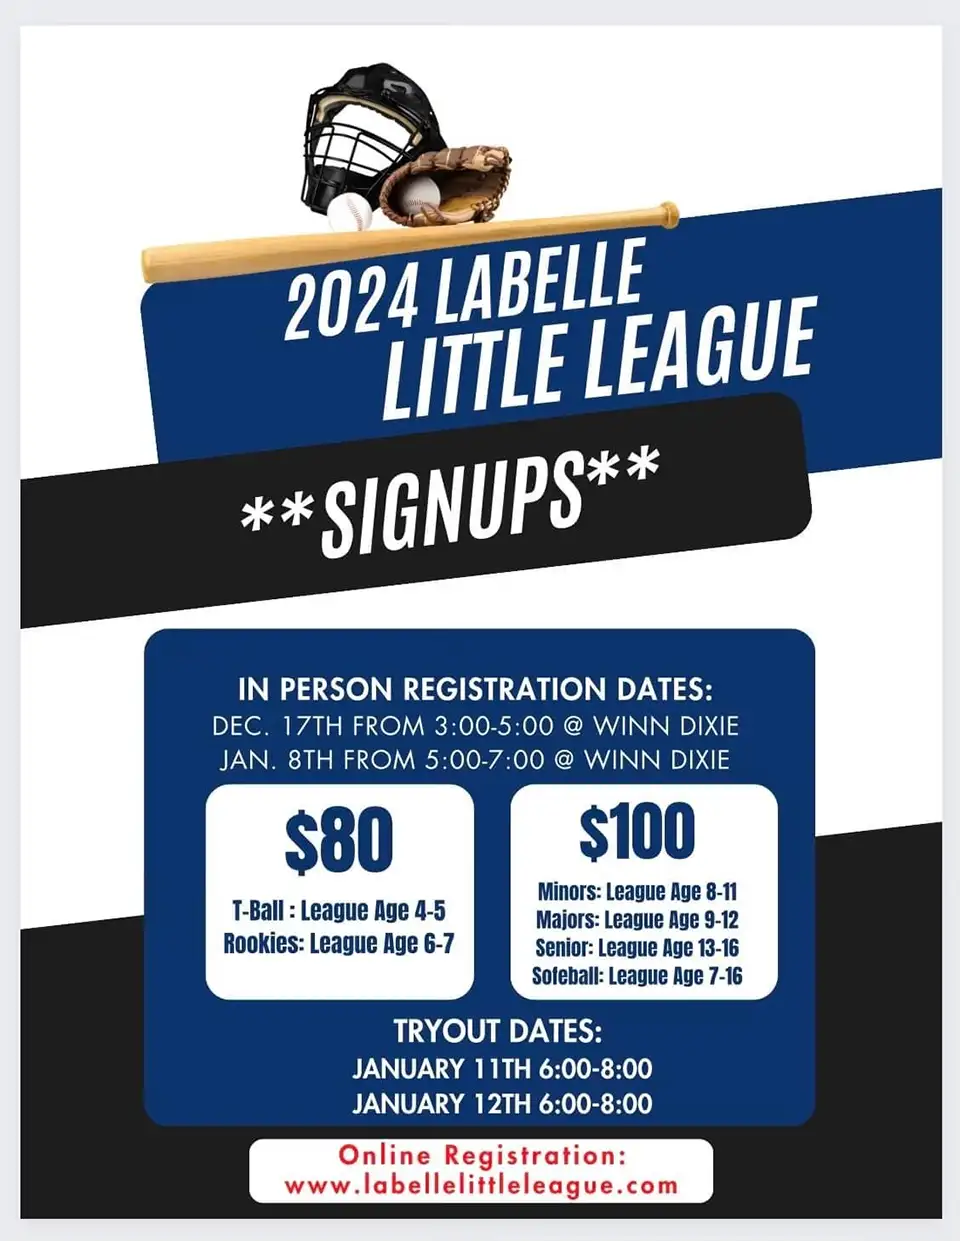 2024 Labelle Little League Signup information